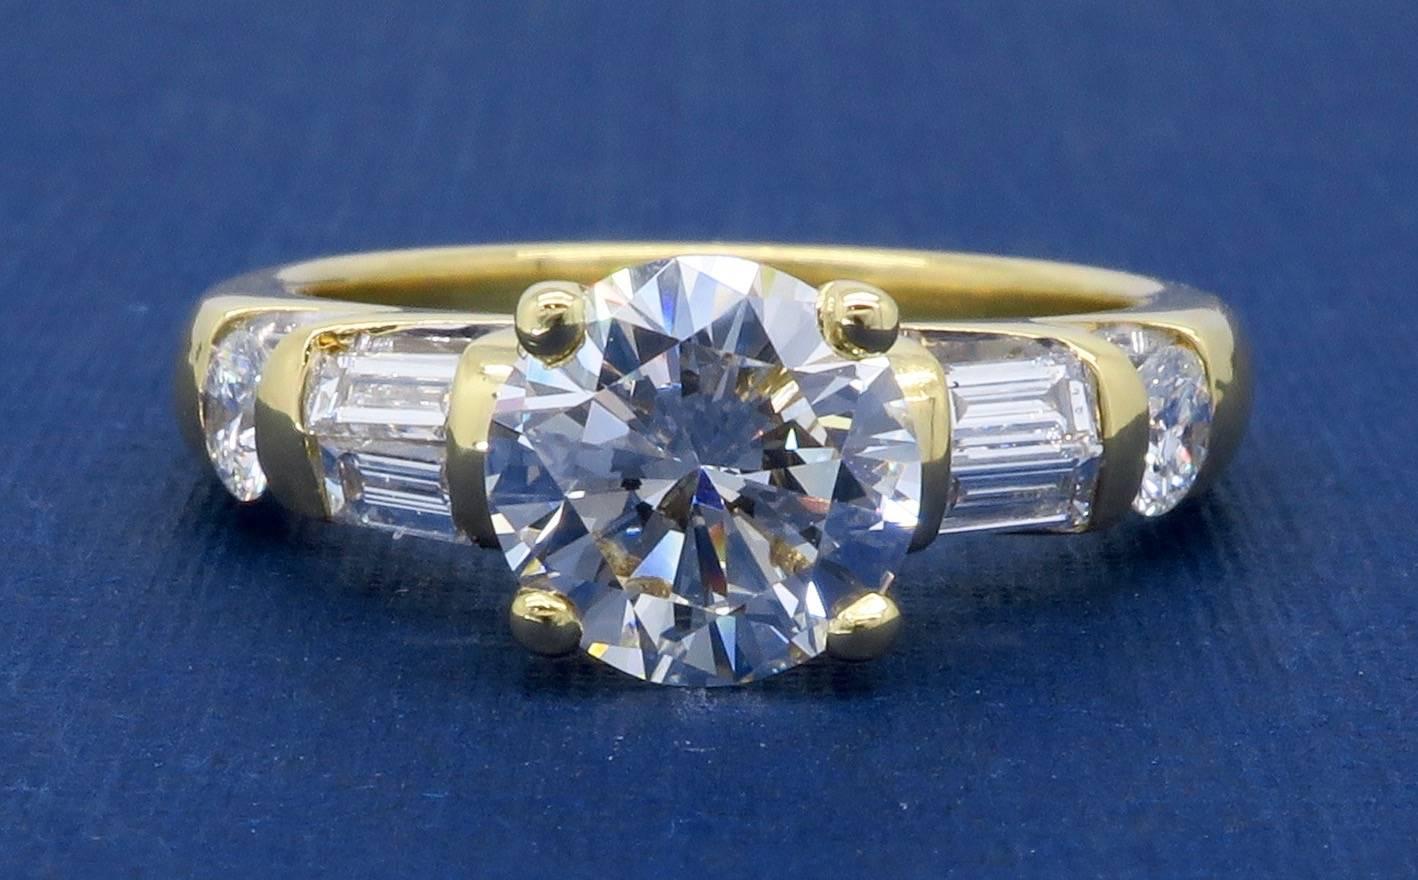 GIA Certified 1.66 Carat Diamond Engagement Ring in 18 Karat Yellow Gold 3